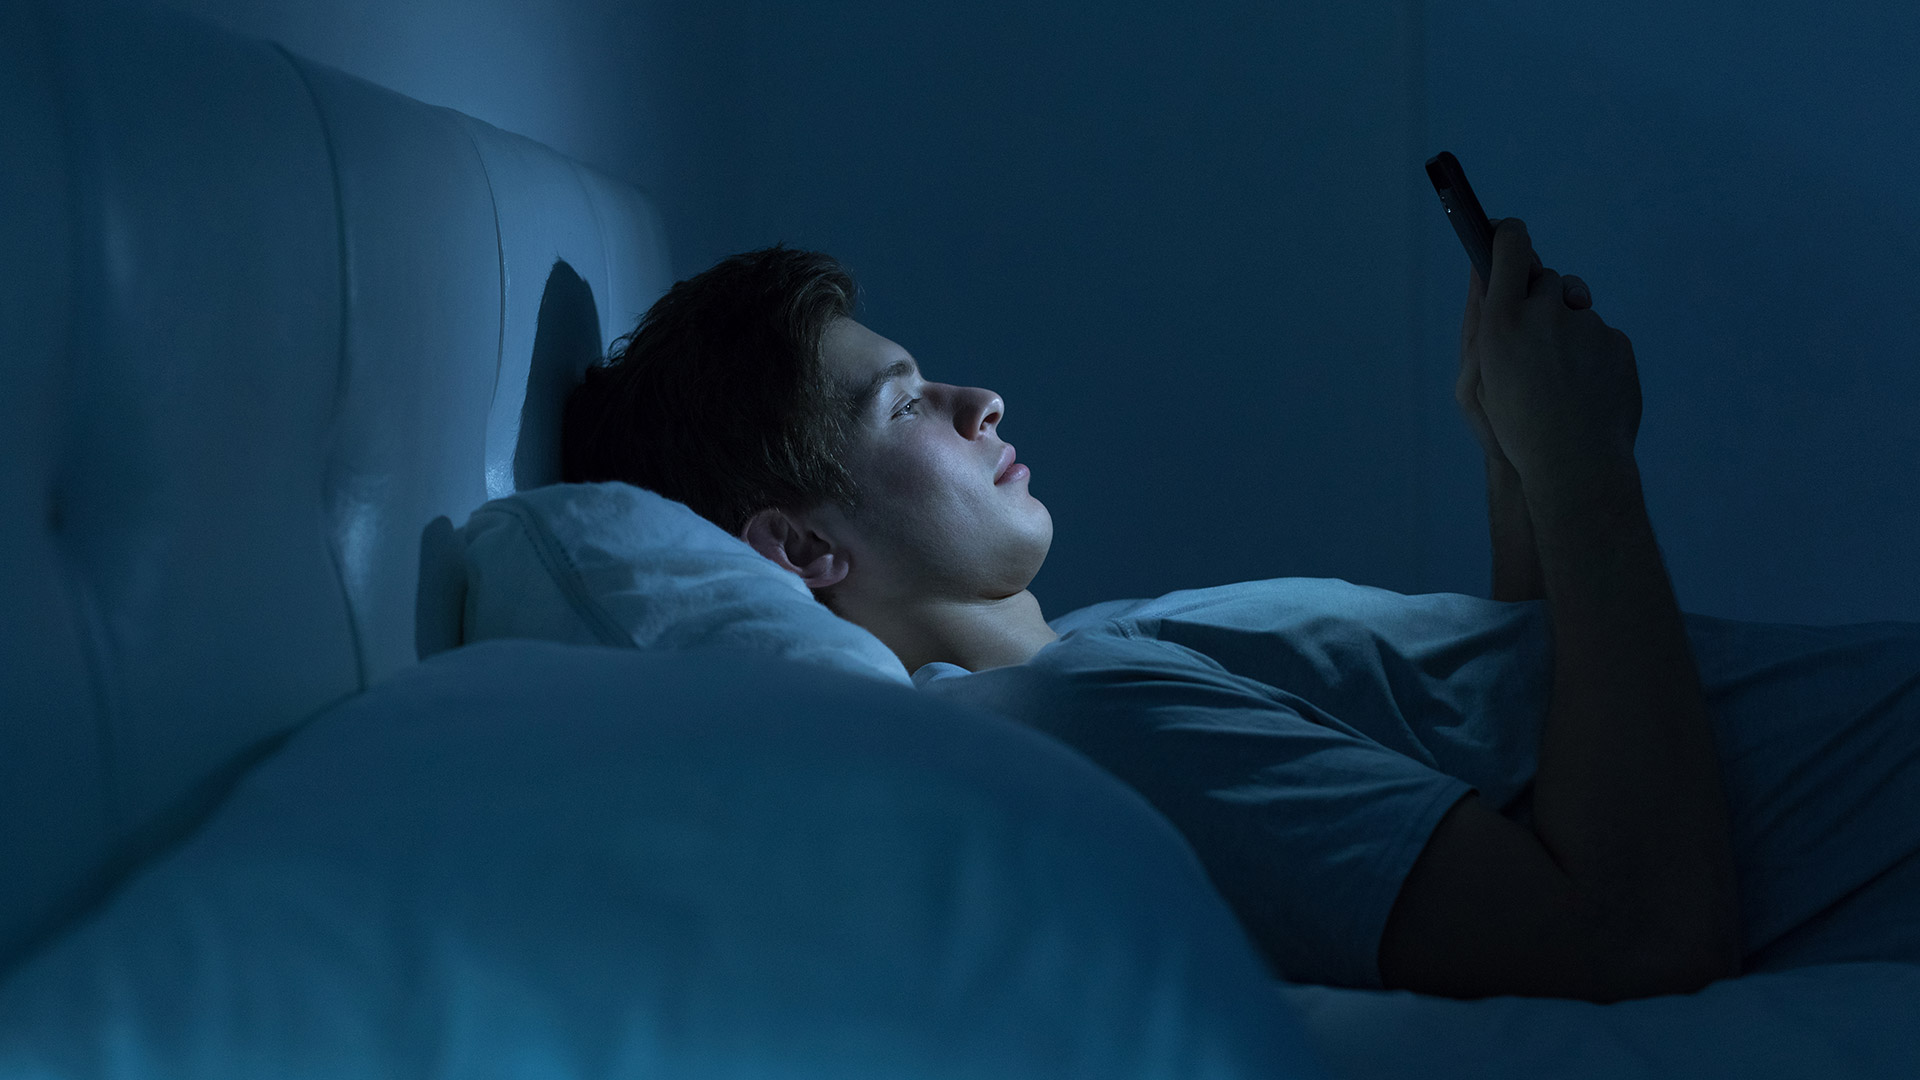 Un informe anterior de los mismos investigadores determinó que una noche de exposición a luz moderada durante el sueño puede afectar la regulación cardiovascular y de glucosa (Getty)